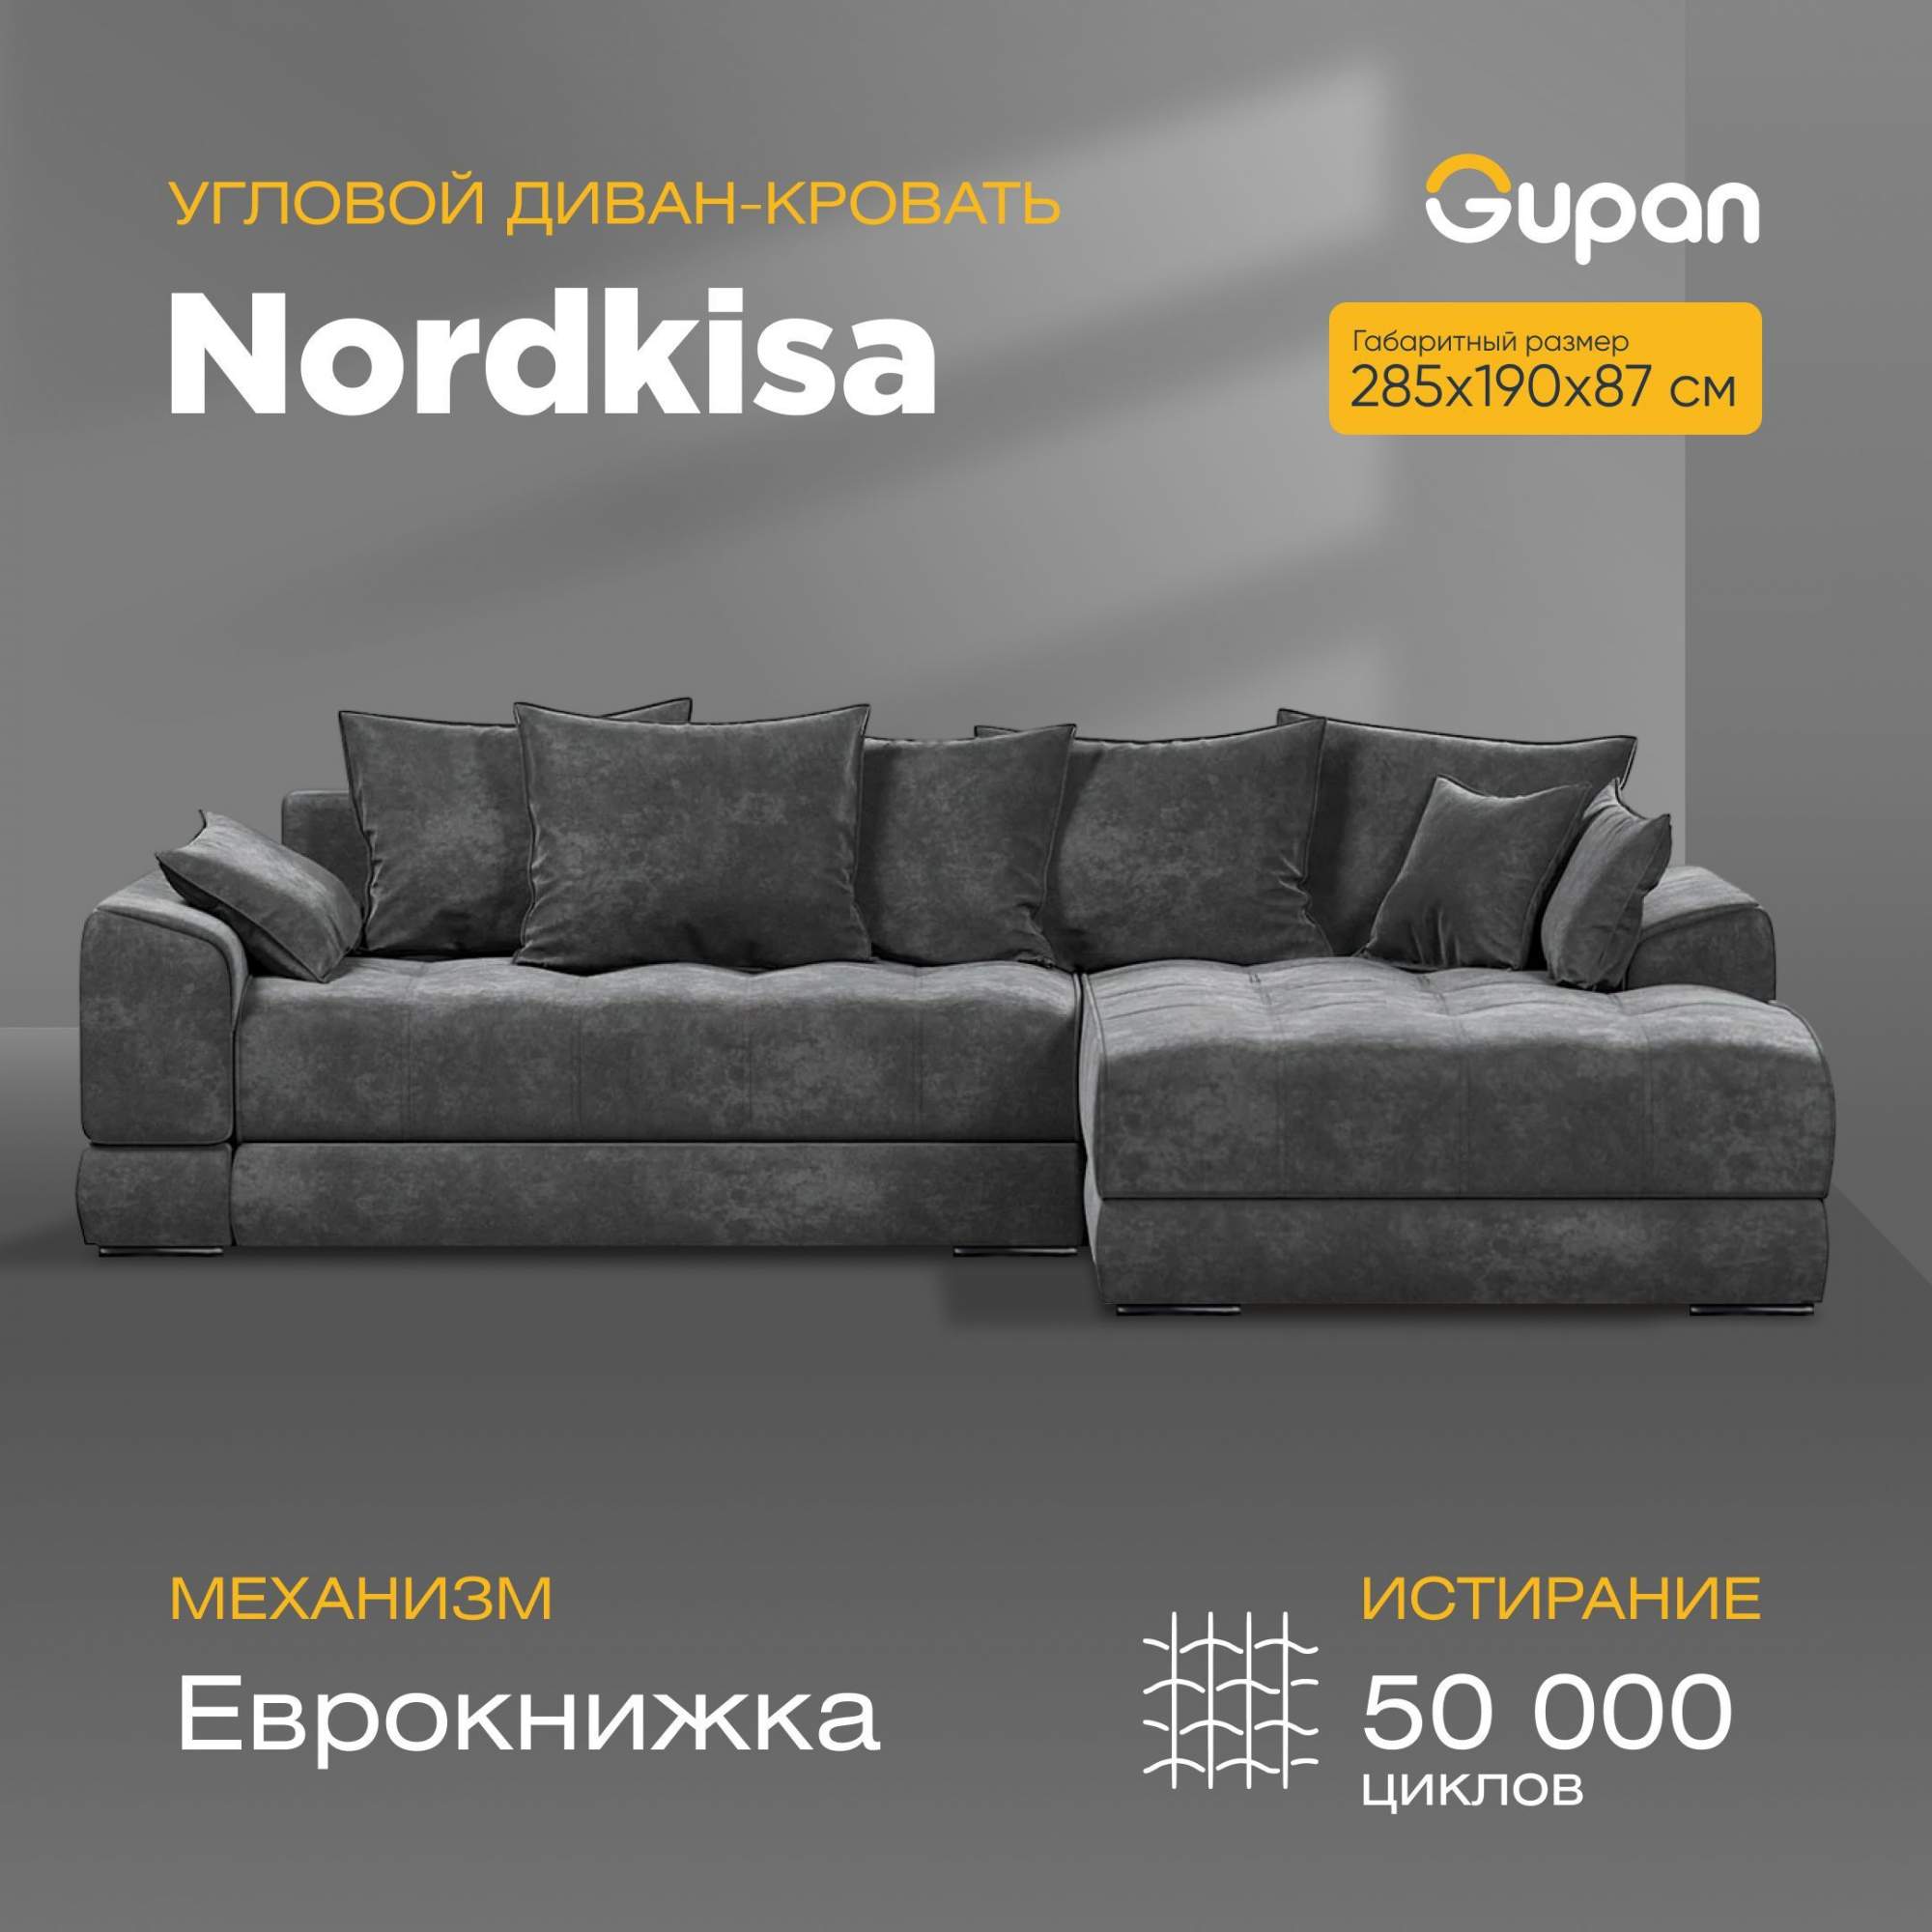 Угловой диван-кровать Gupan Nordkisa, Еврокнижка, ППУ, цвет Amigo Grafit,угол справа – купить в Москве, цены в интернет-магазинах на Мегамаркет